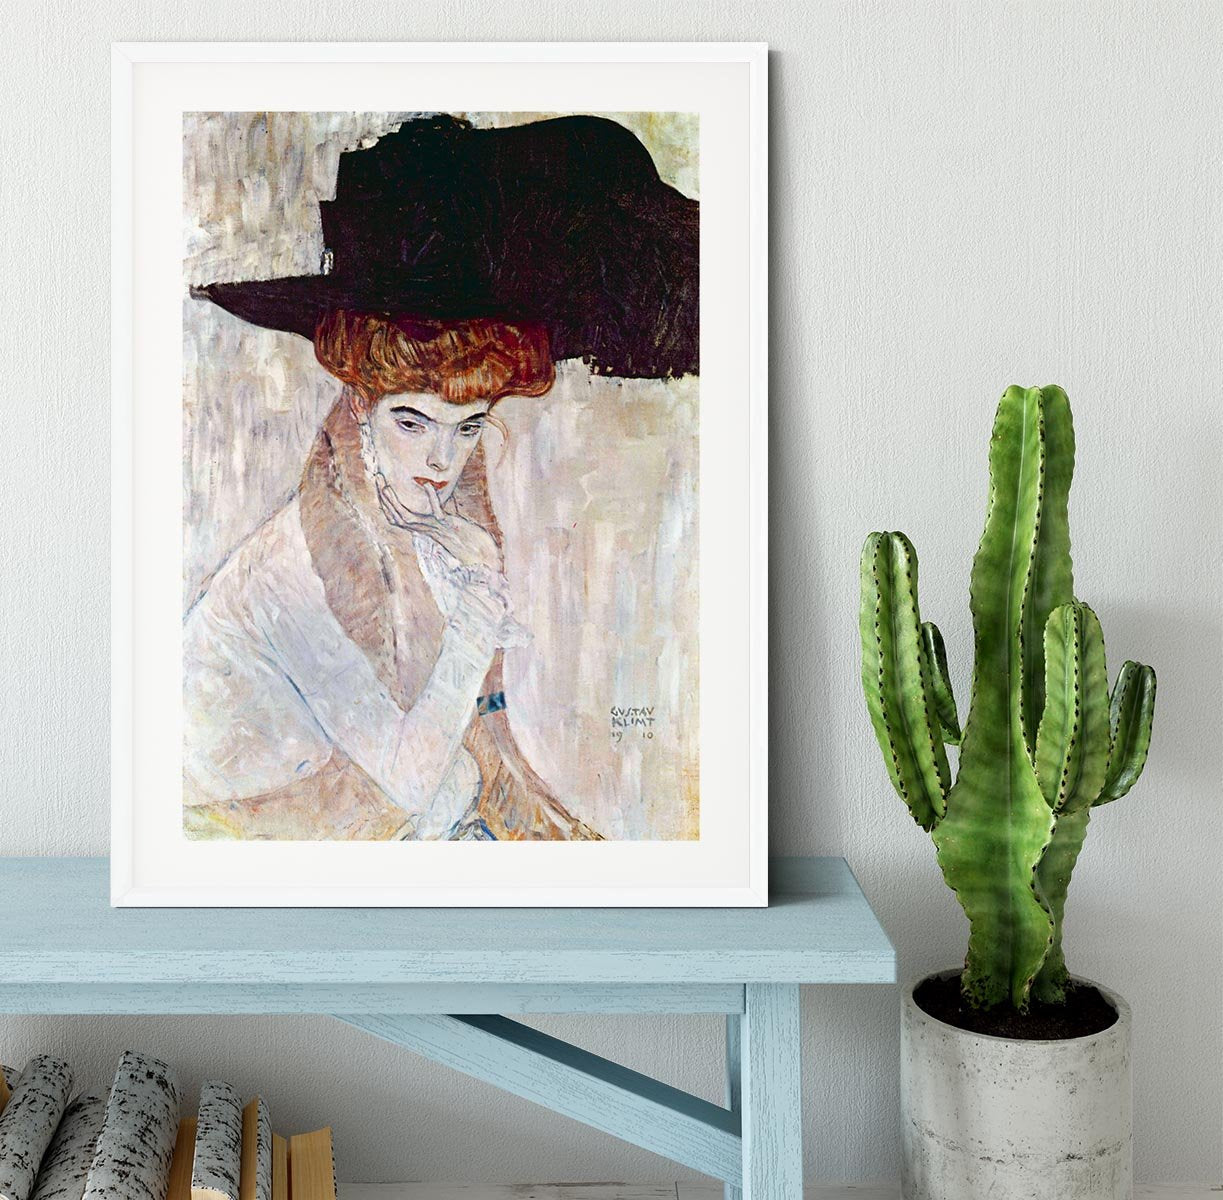 The Black Hat by Klimt Framed Print - Canvas Art Rocks - 5